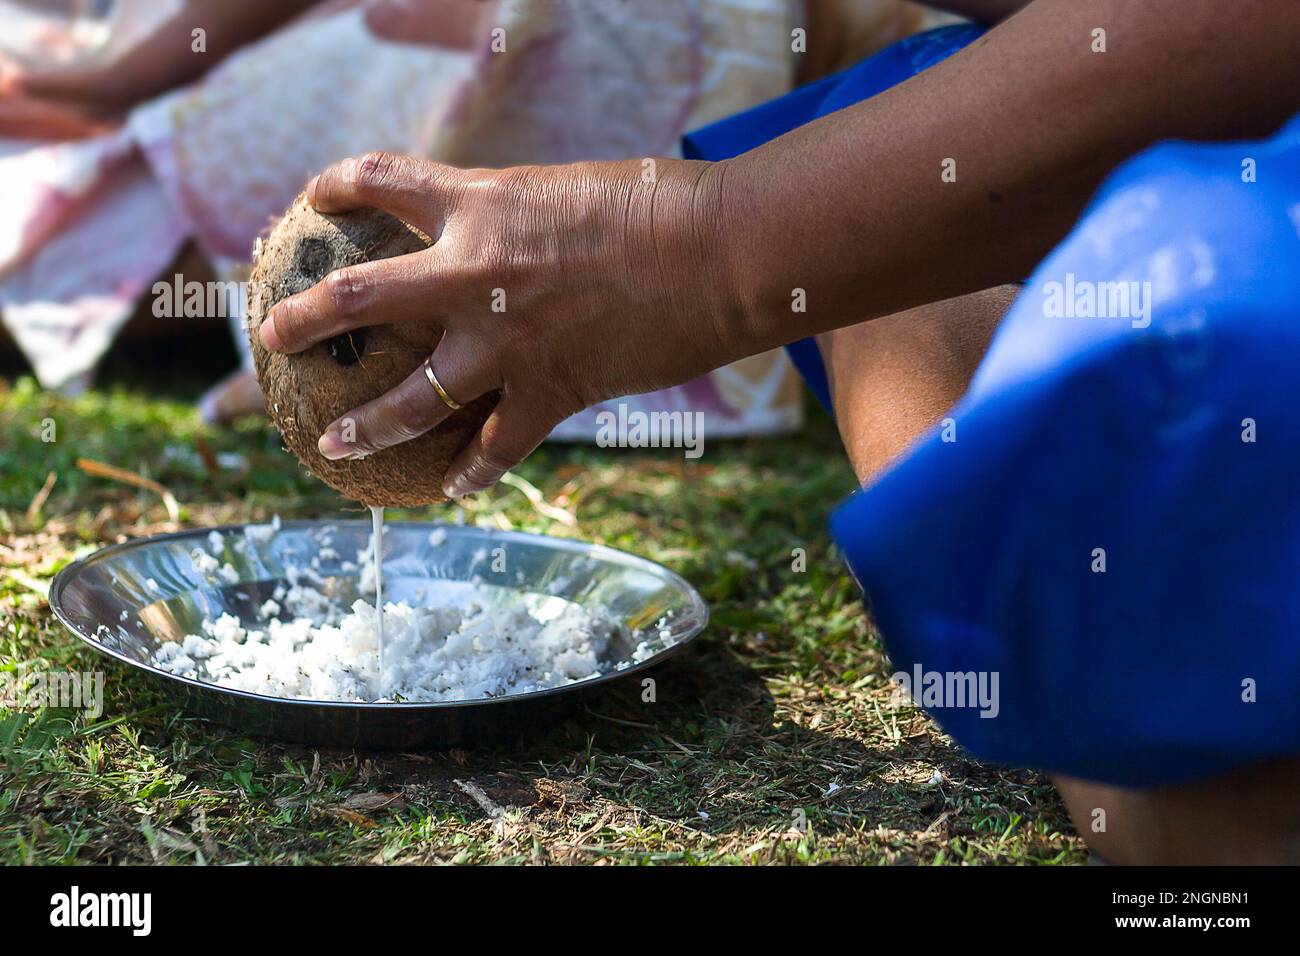 Une femme fidjienne laitait des noix de coco cultivées dans son jardin Banque D'Images